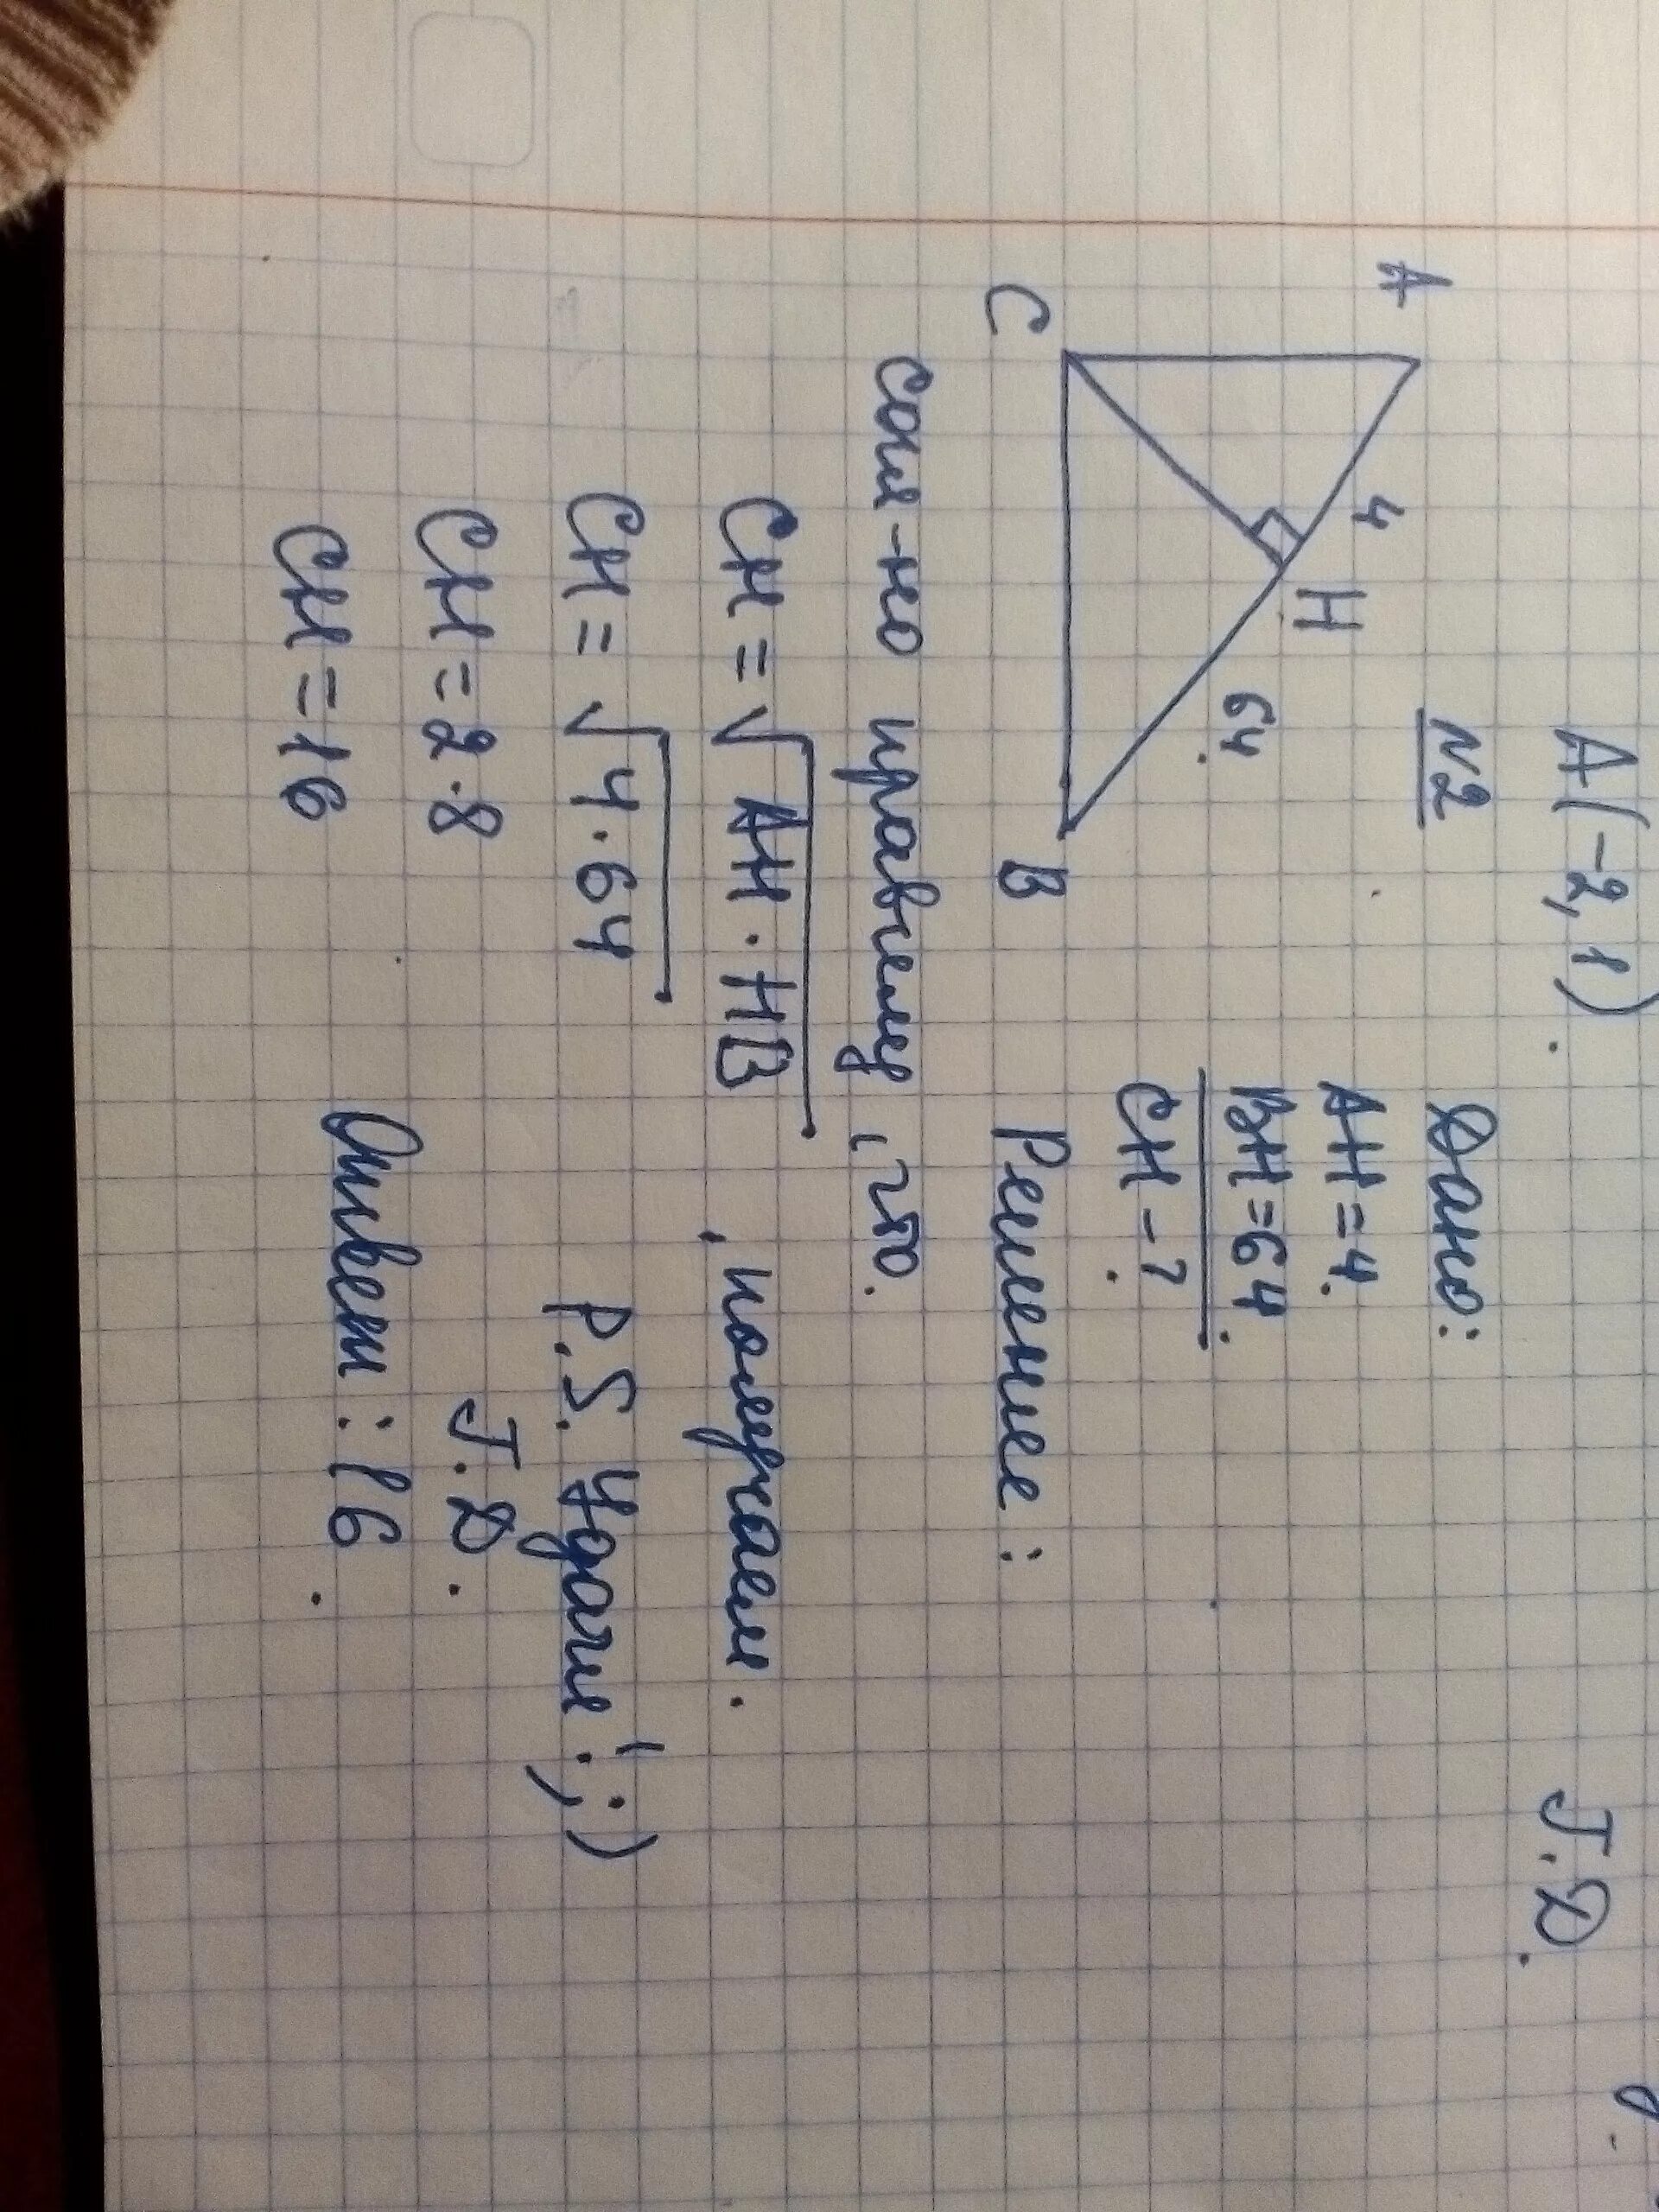 Bh 64 ch 16. Прямоугольный треугольник с гипотенузой ab. В прямоугольном треугольнике ABC гипотенуза ab. На гипотенузу прямоугольного треугольника опущена высота СН. На гипотенузу АВ прямоугольного треугольника АВС опущена высота.